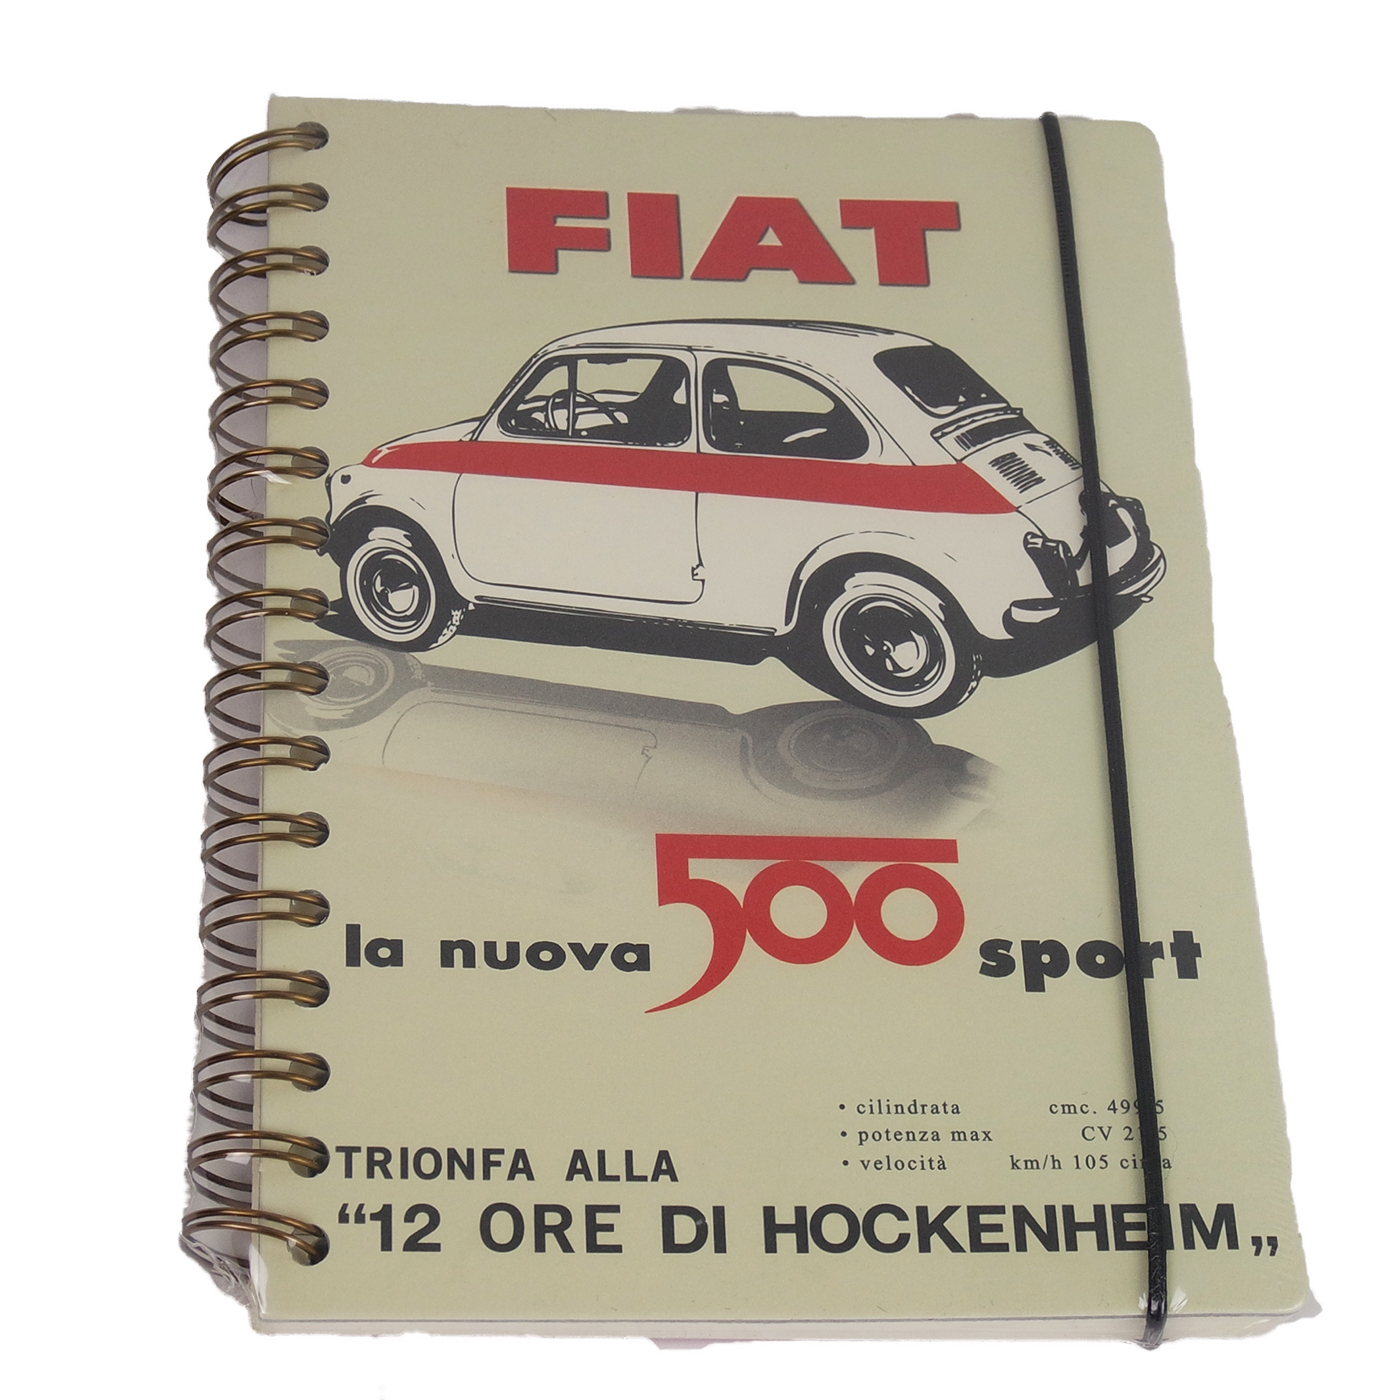 Notizbuch Fiat 500 sport